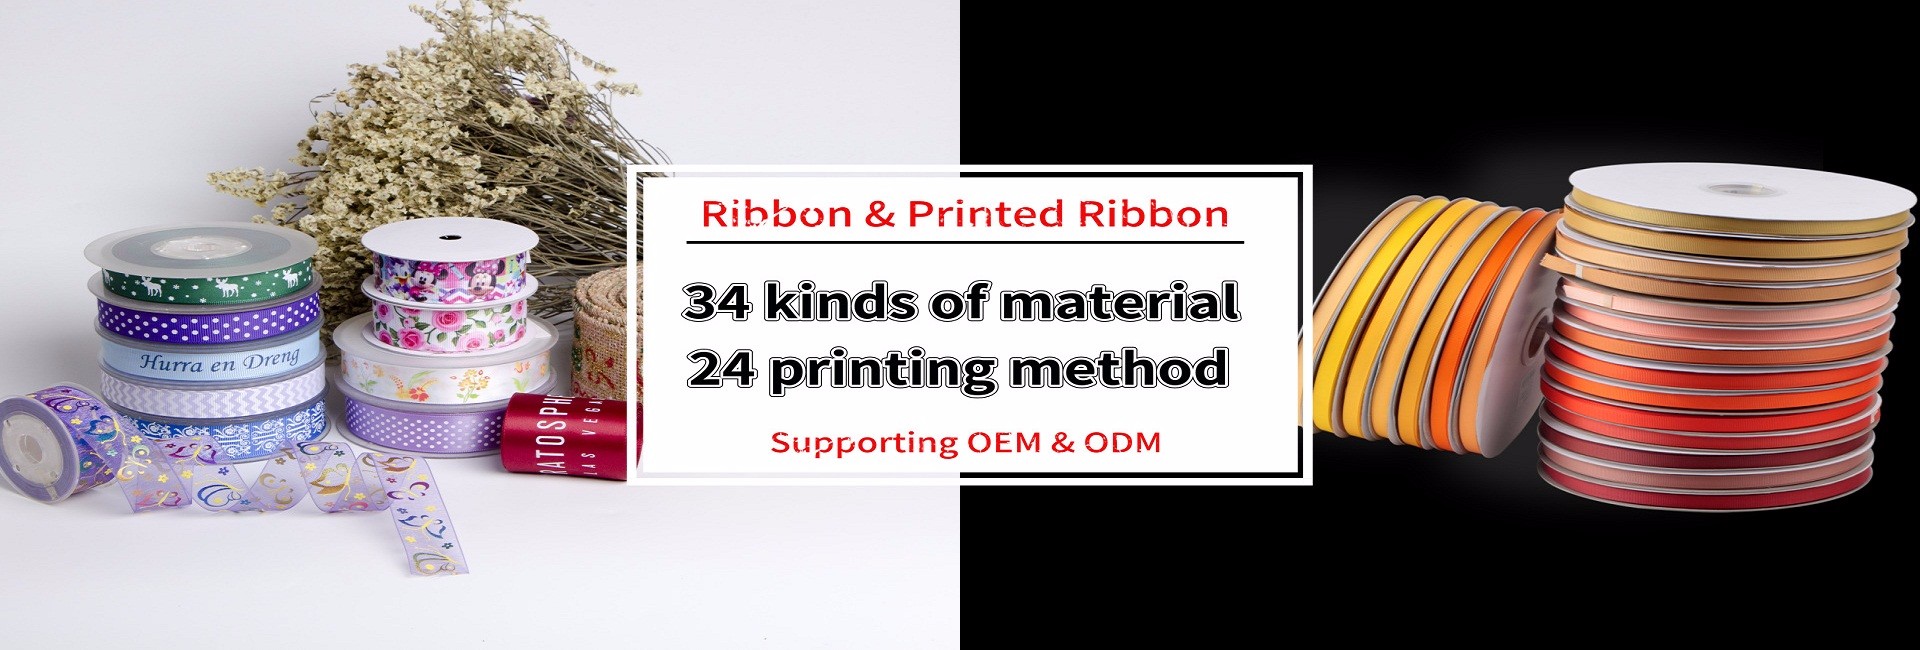 Ribbon & Printed Ribbon